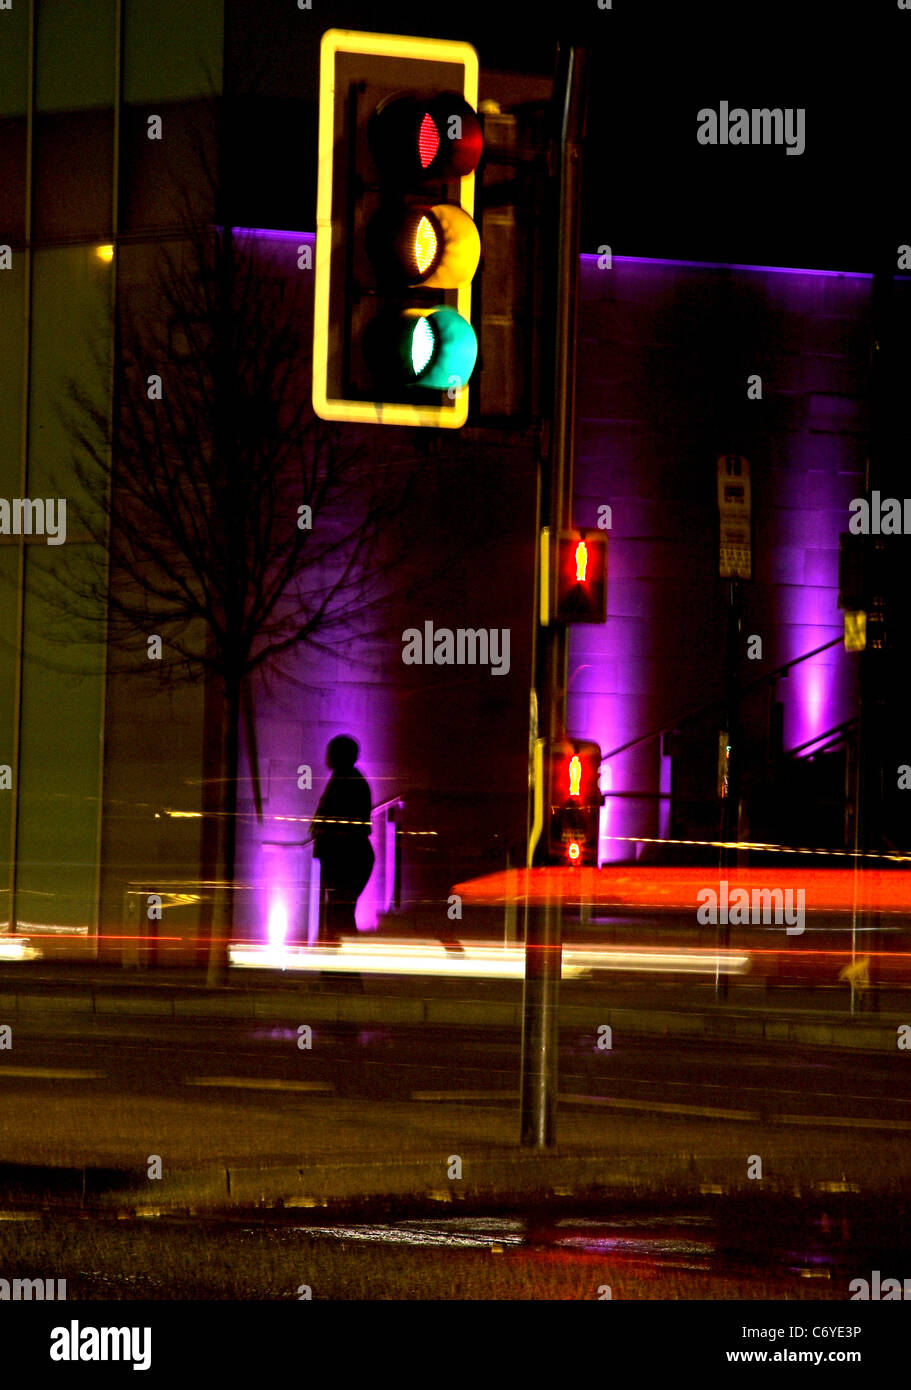 Un paso de peatones en la noche en el centro de la ciudad con estelas de luz desde el paso de los vehículos y la silueta de una persona Foto de stock